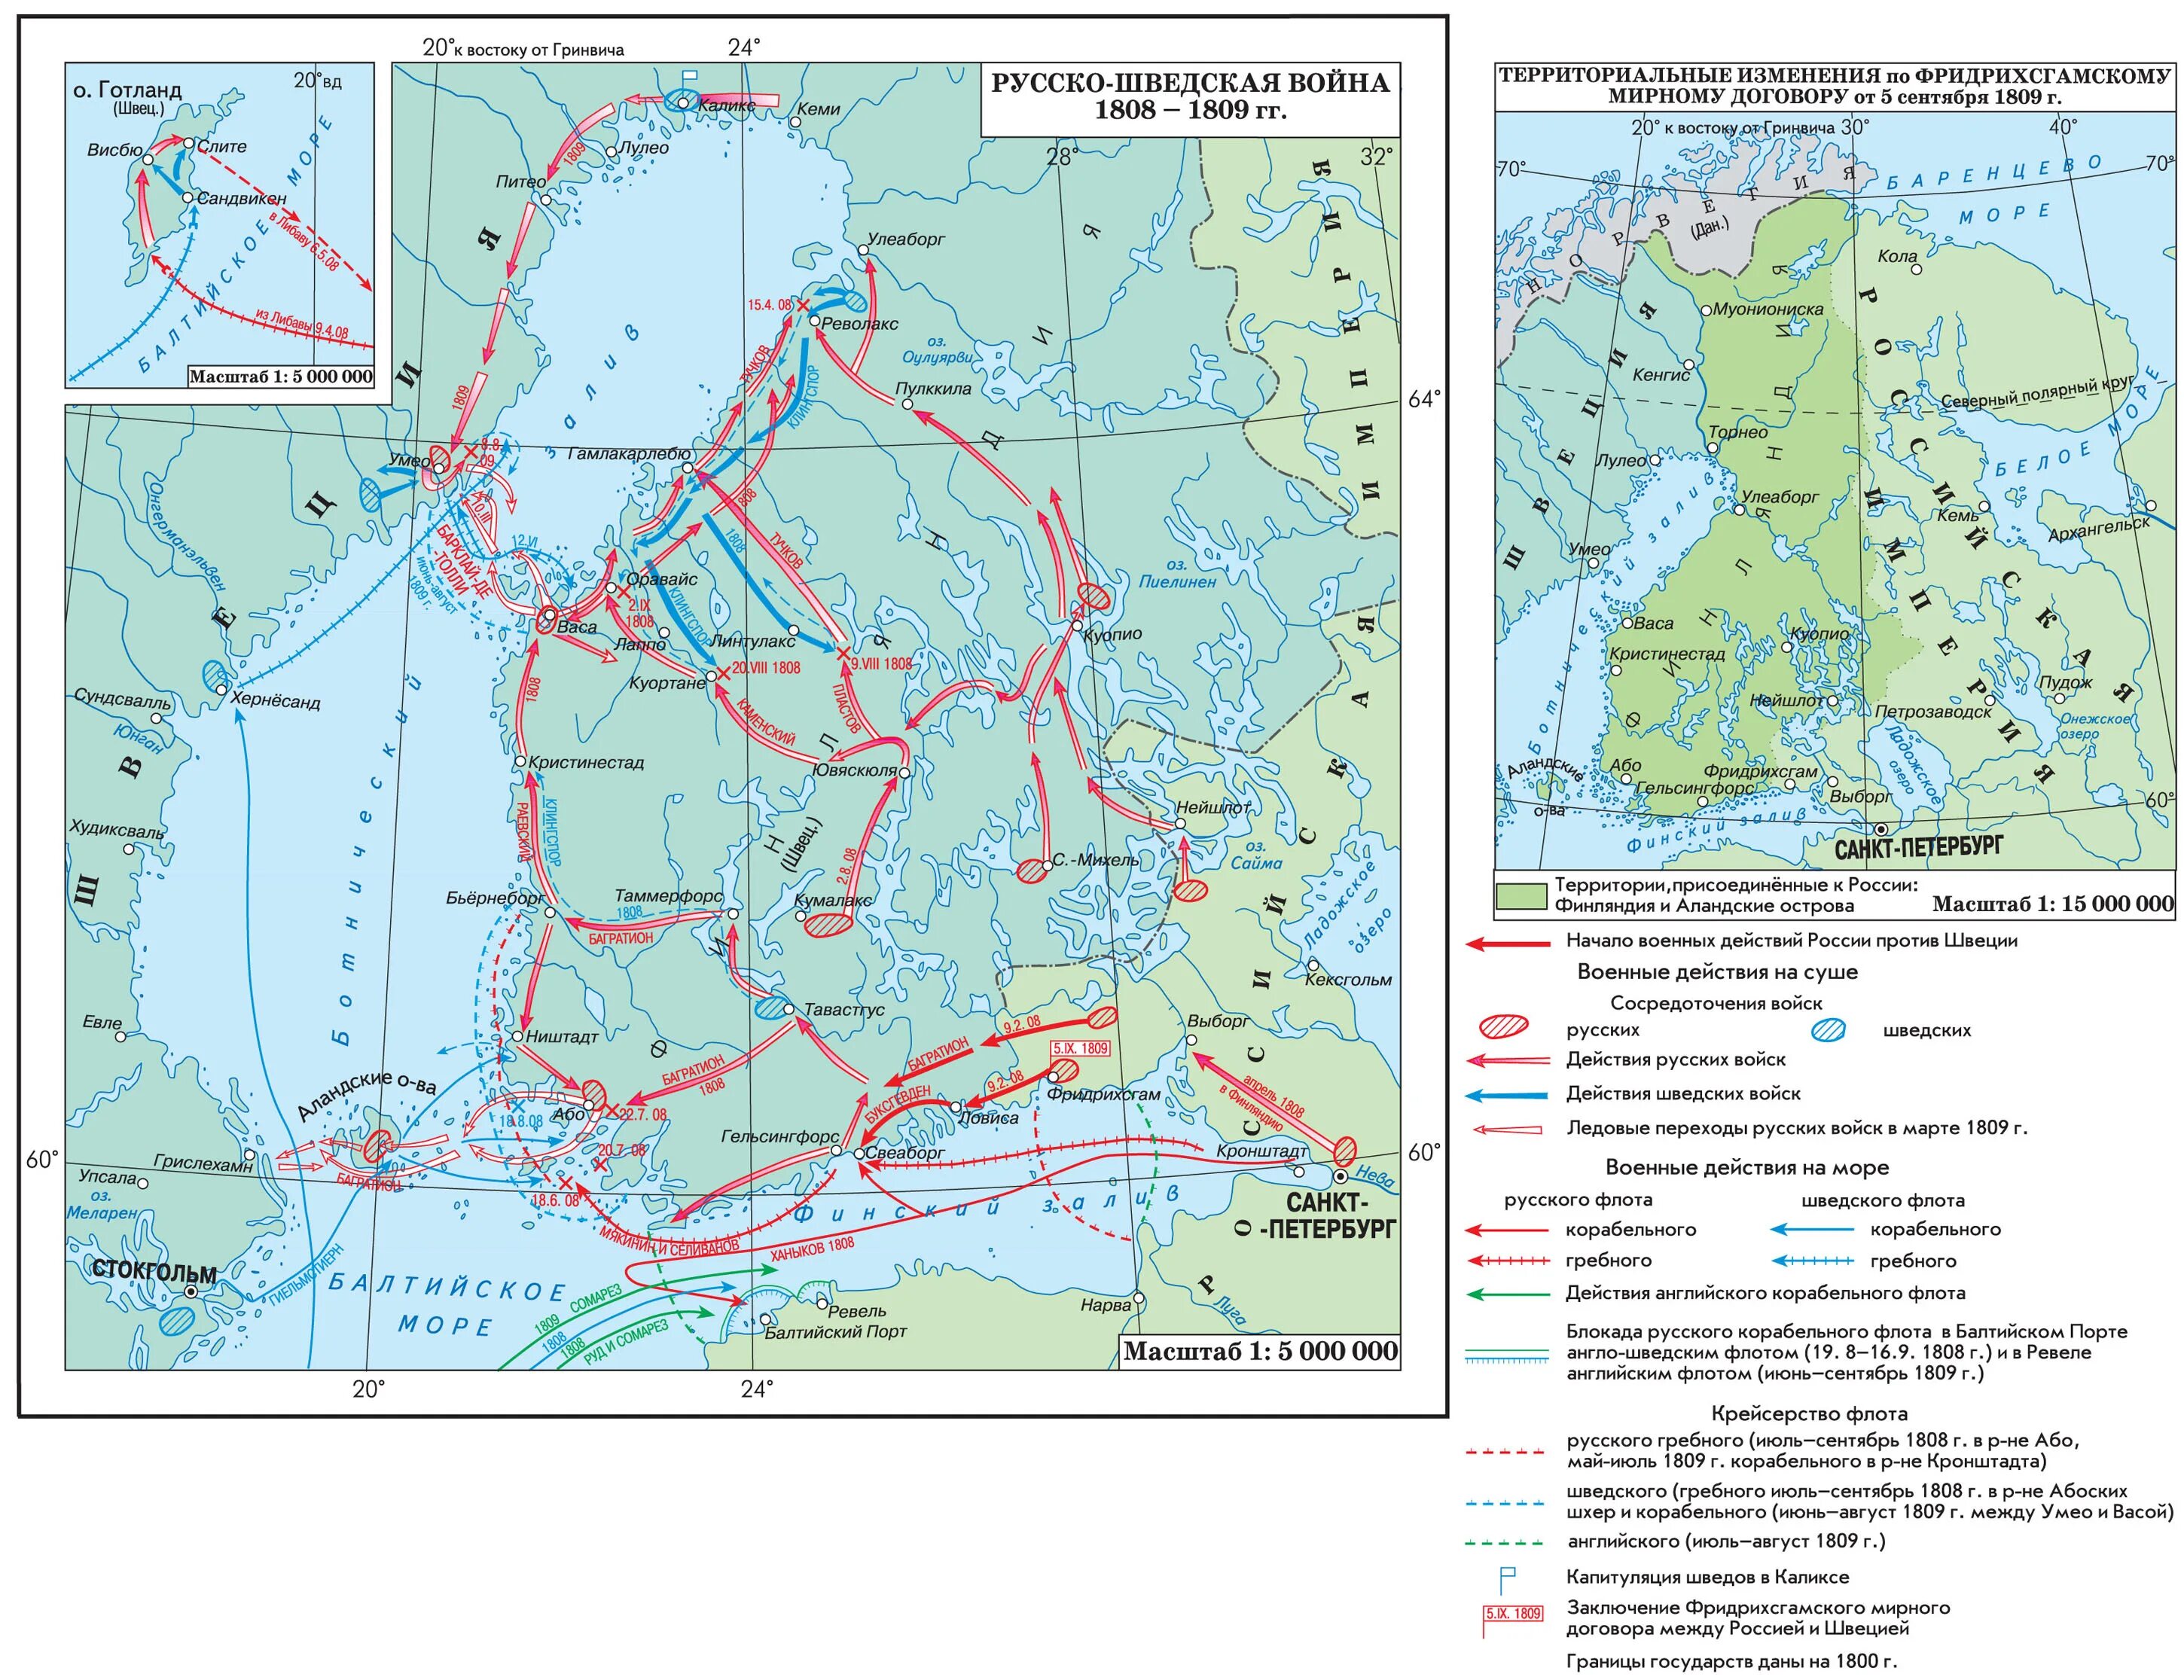 Финляндия при александре 1. Условия мирного договора русско шведской войны 1808-1809.